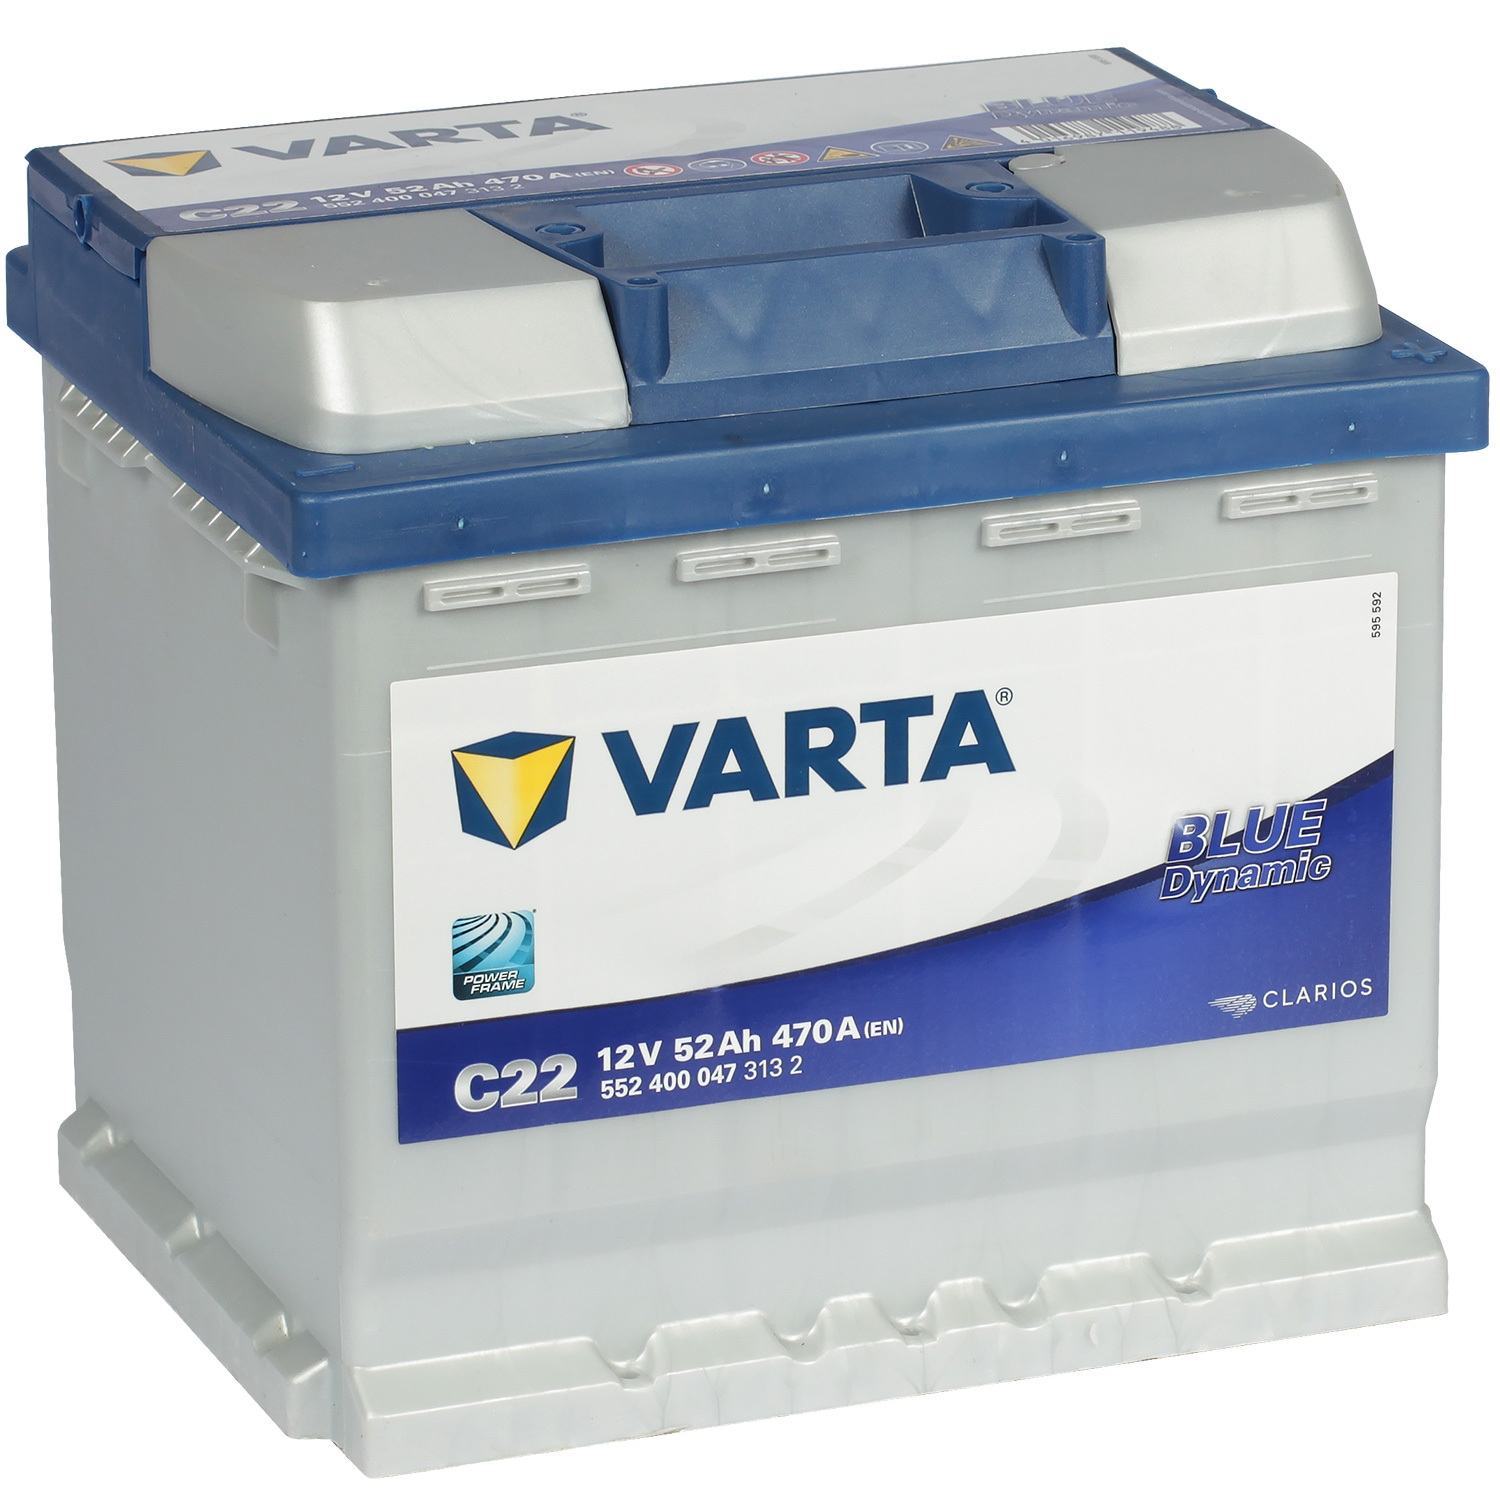 Varta Автомобильный аккумулятор Varta Blue Dynamic C22 52 Ач обратная полярность L1 varta автомобильный аккумулятор varta 105 ач обратная полярность l6